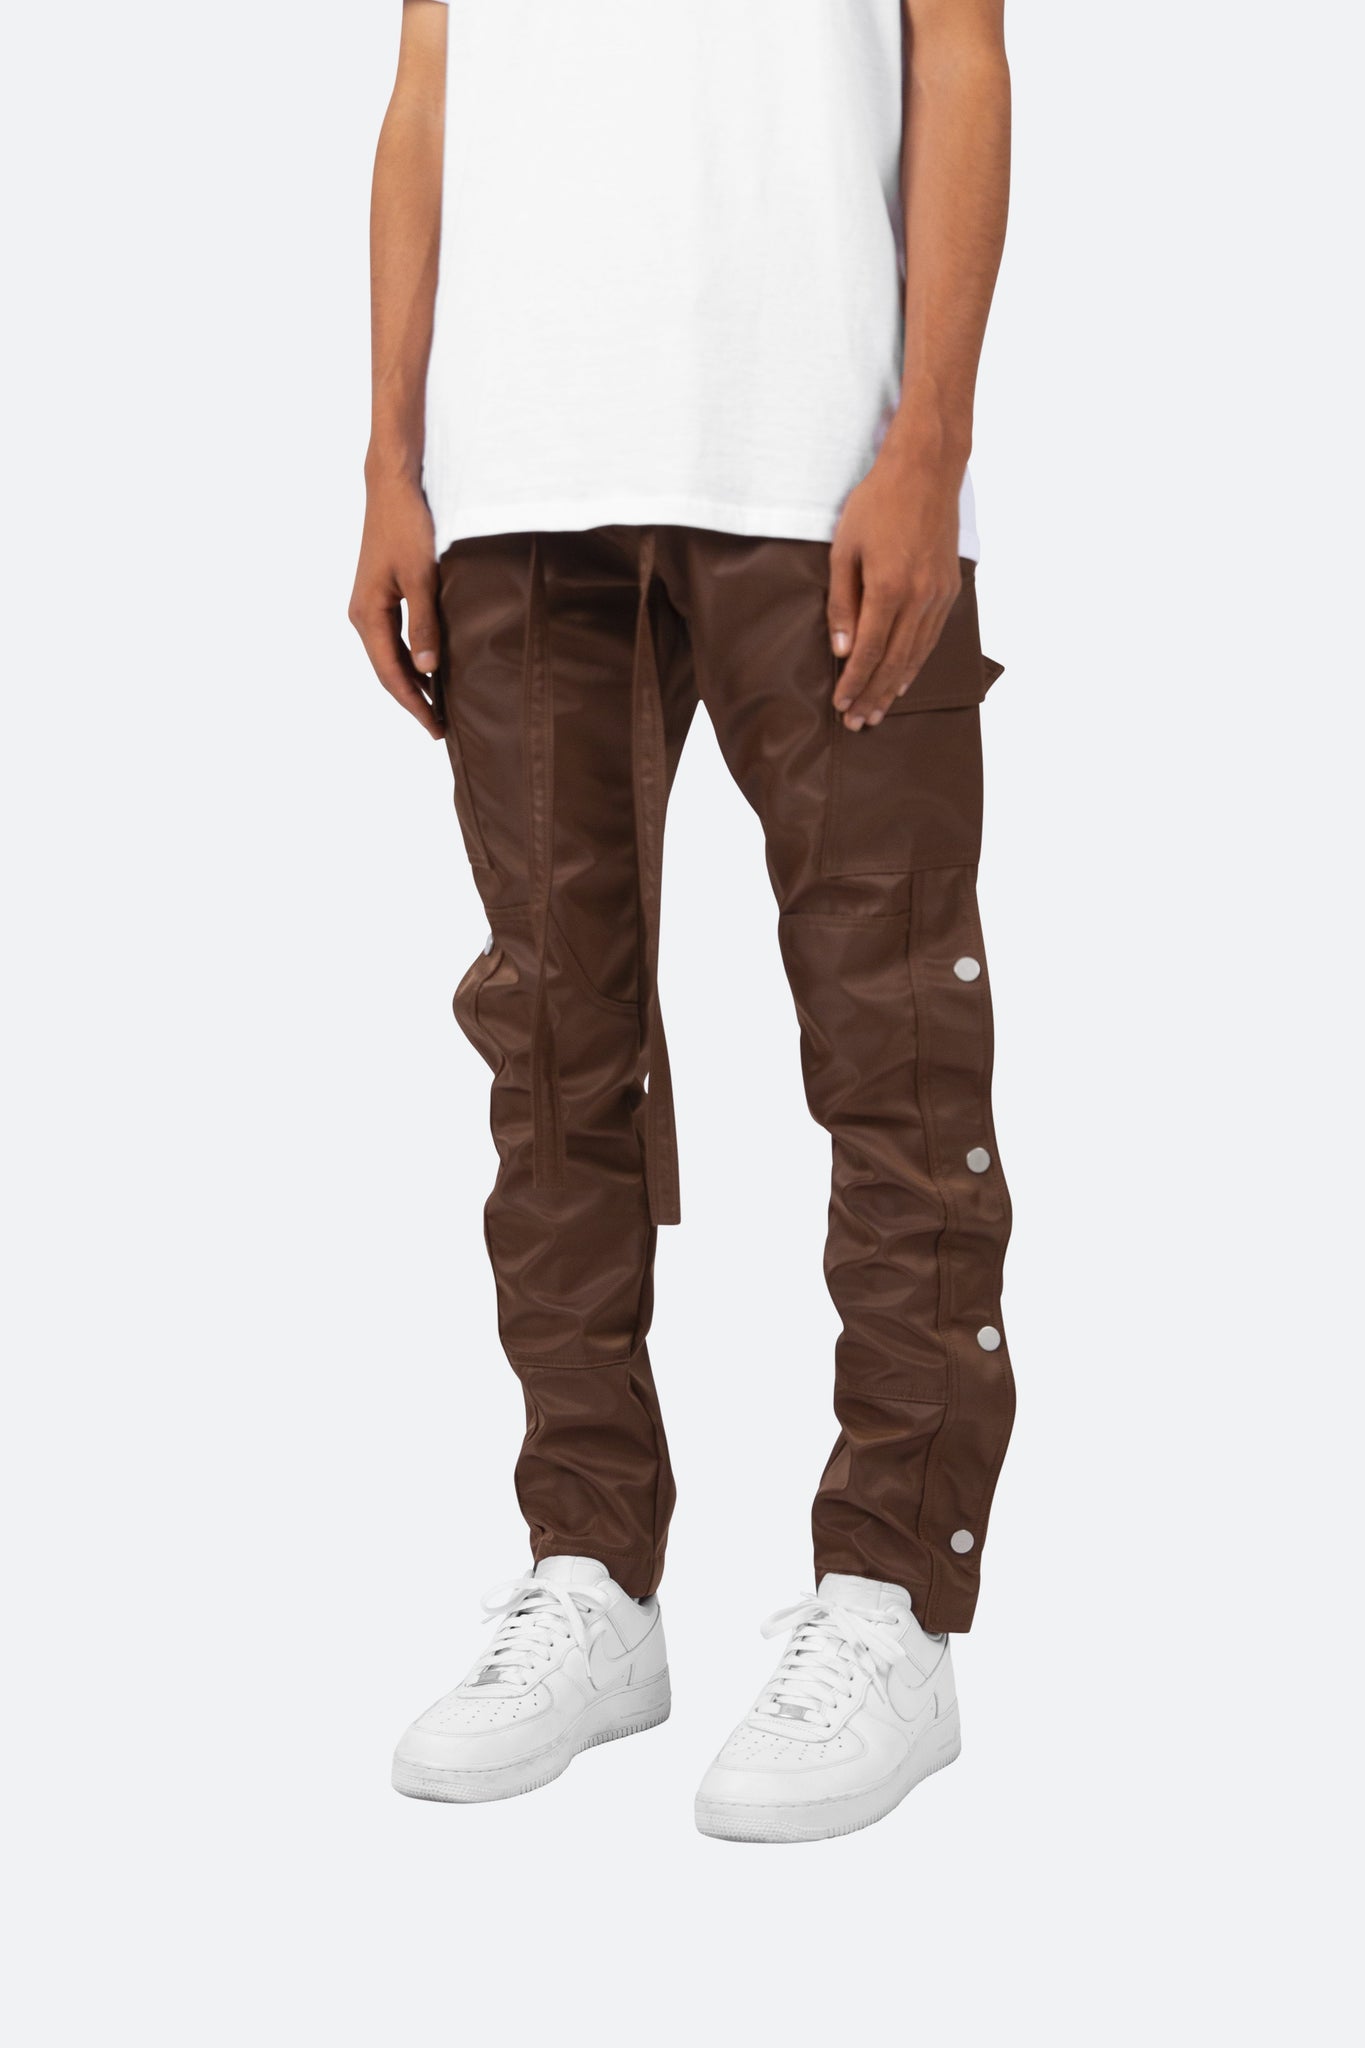 Snap Zipper II Cargo Pants - Brown